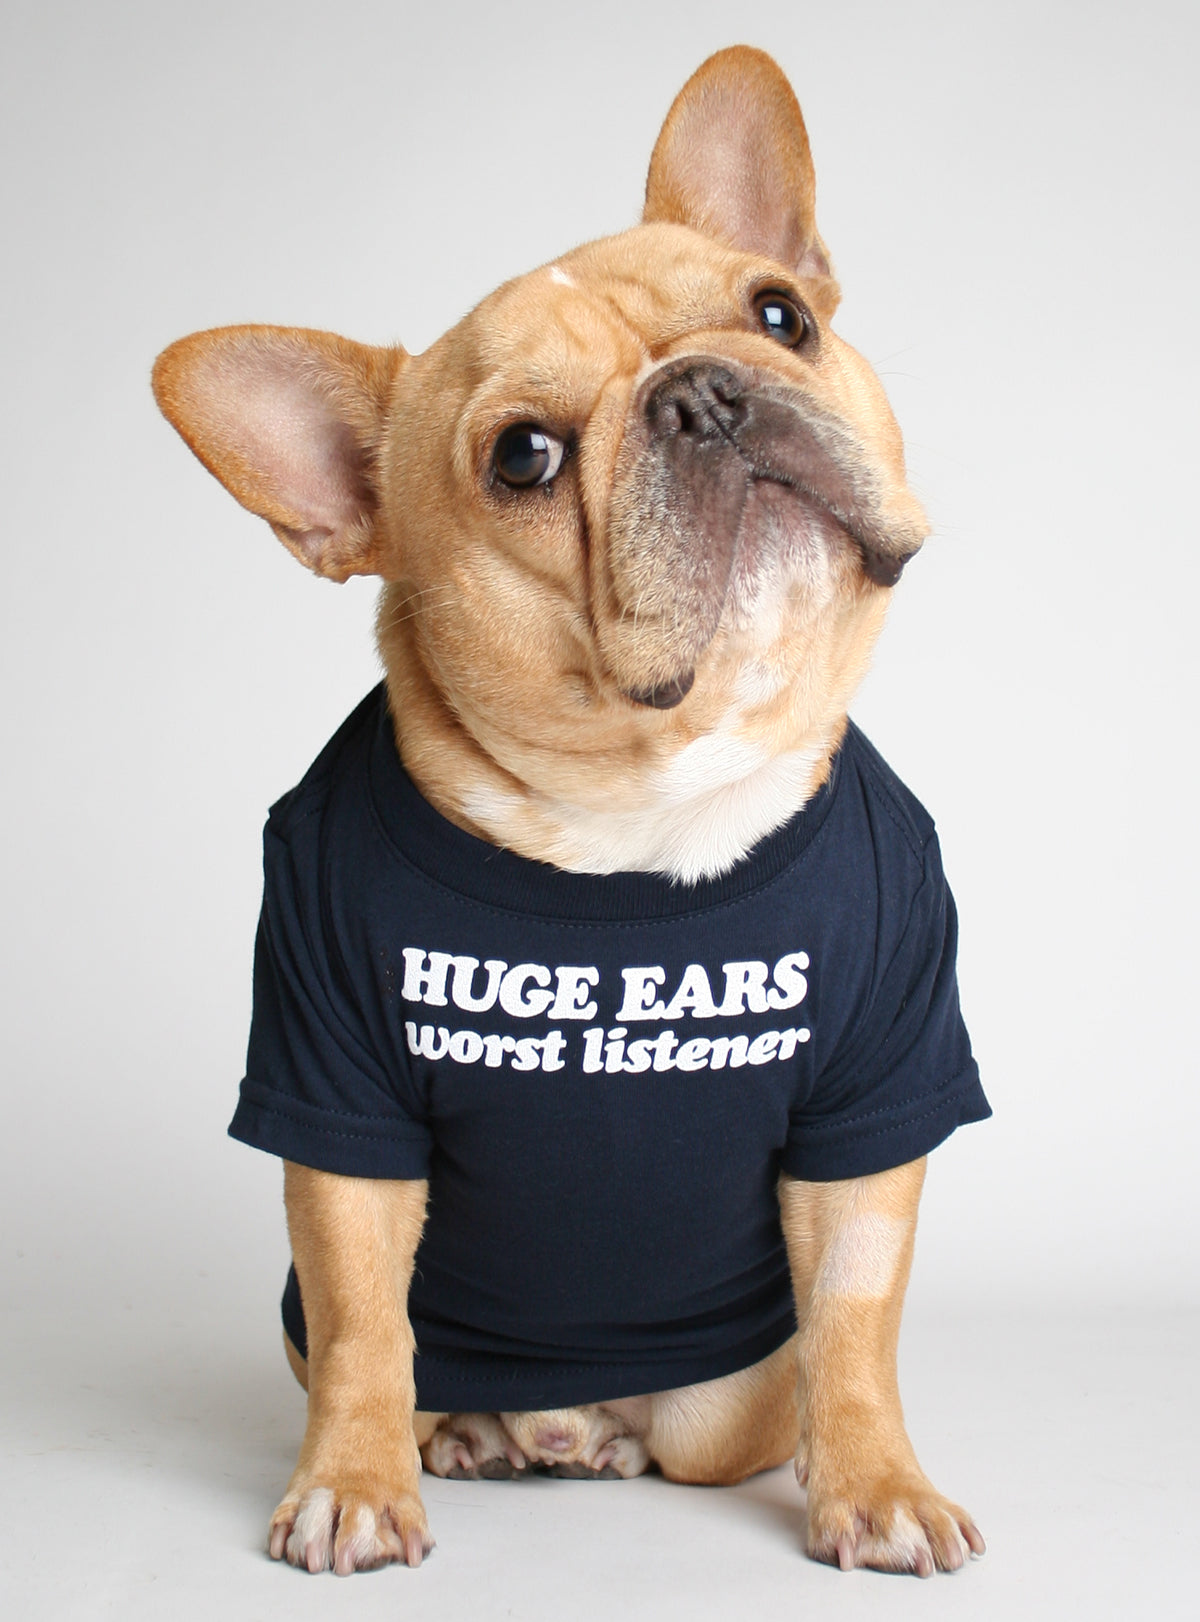 Huge Ears Worst Listener Dog Tee